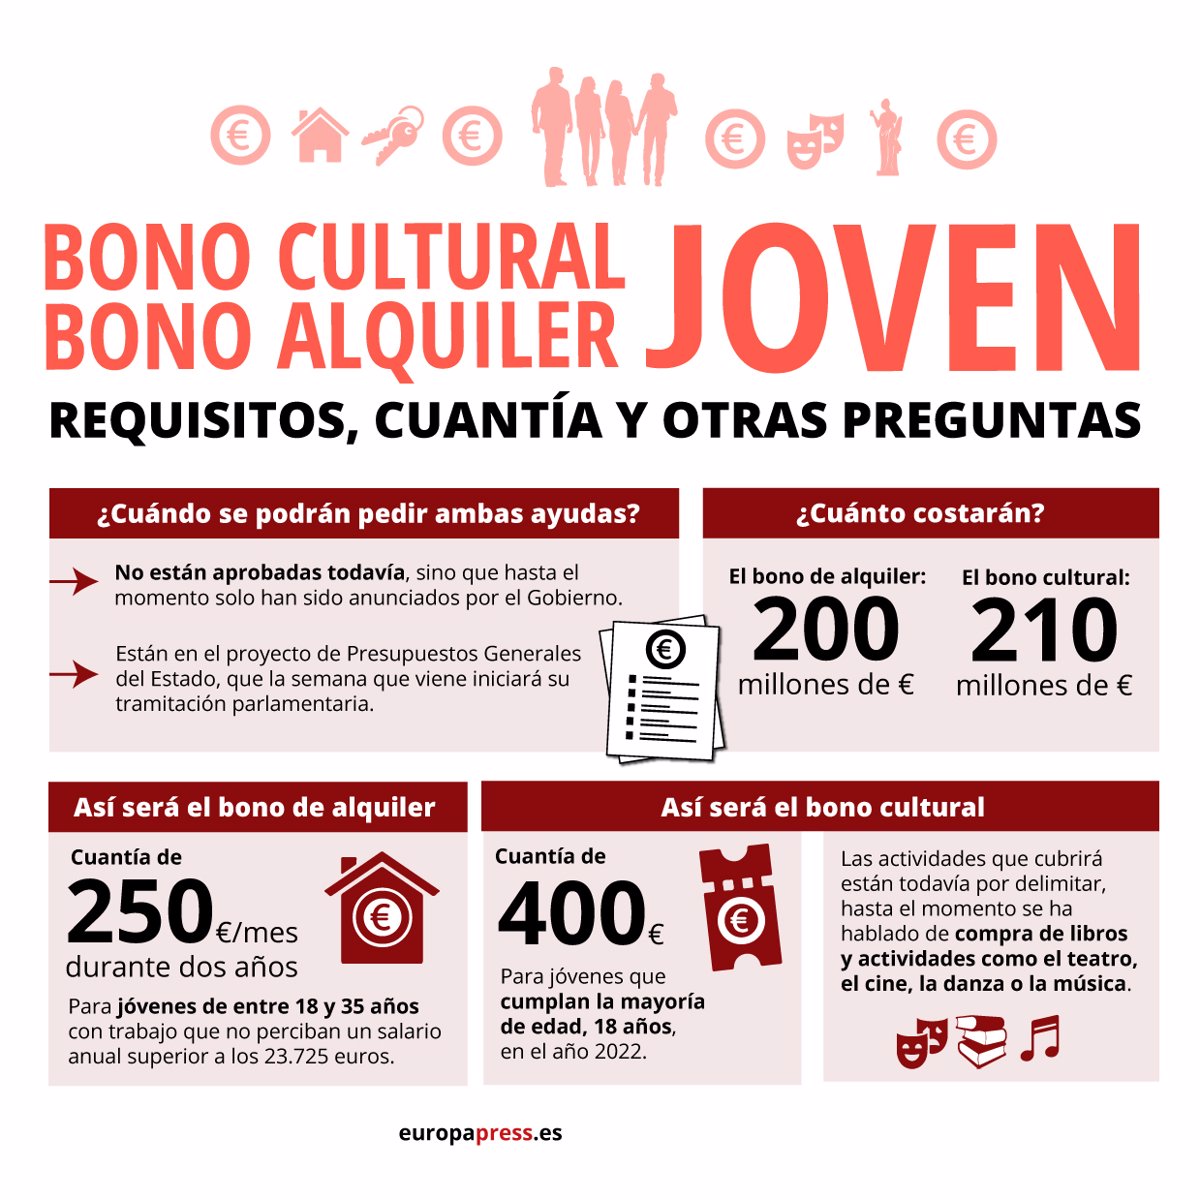 Los aragoneses nacidos en 2004 podrán solicitar el Bono Cultural Joven